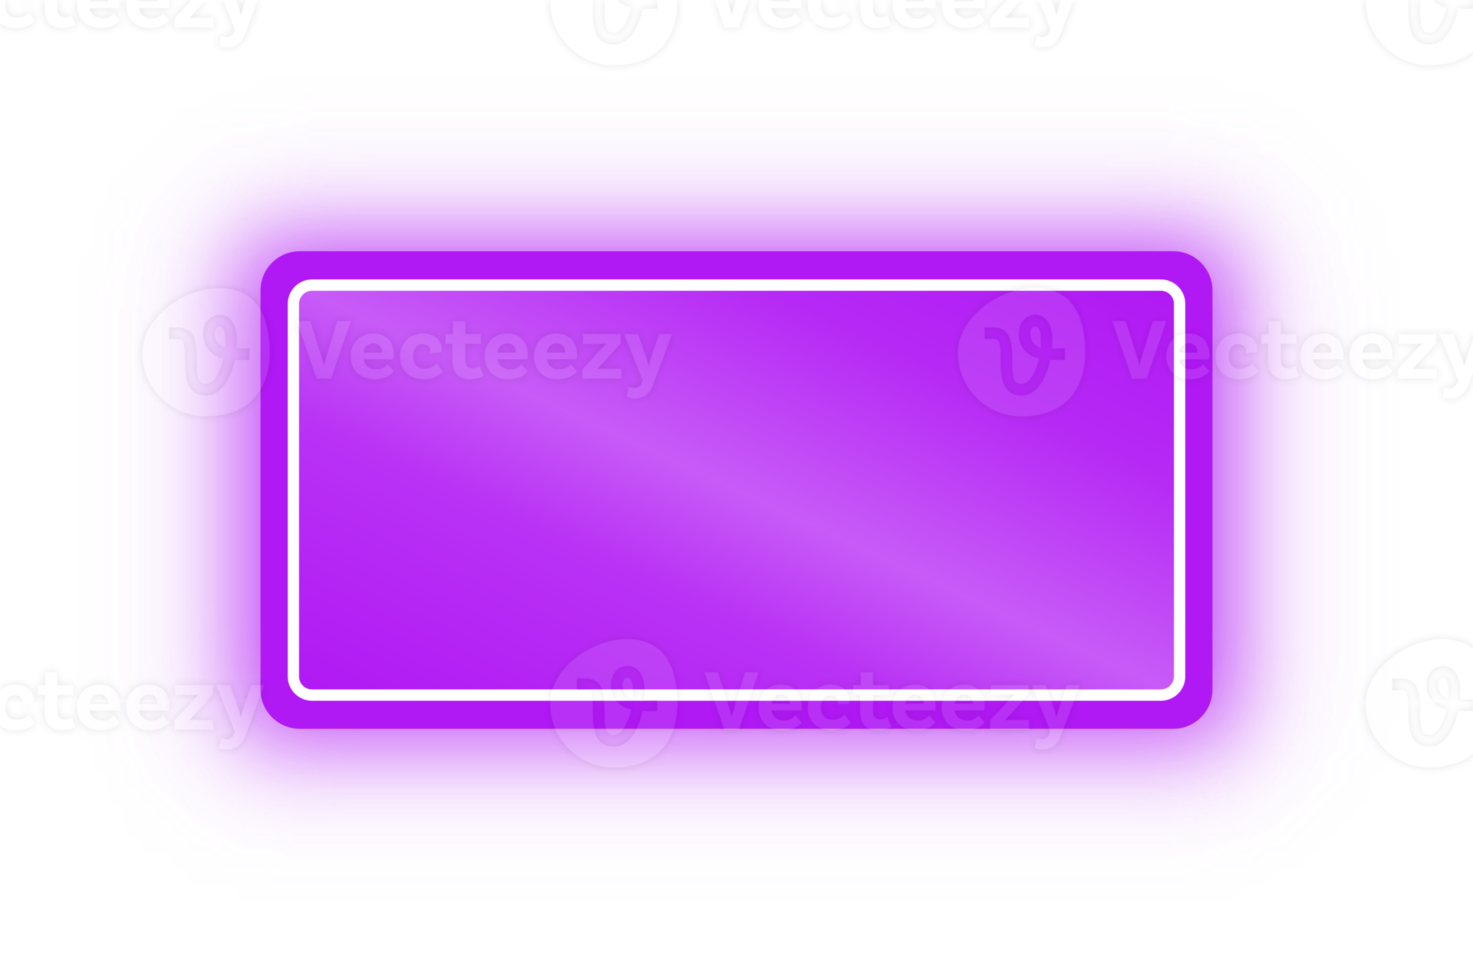 bannière rectangle néon violet, rectangle néon png